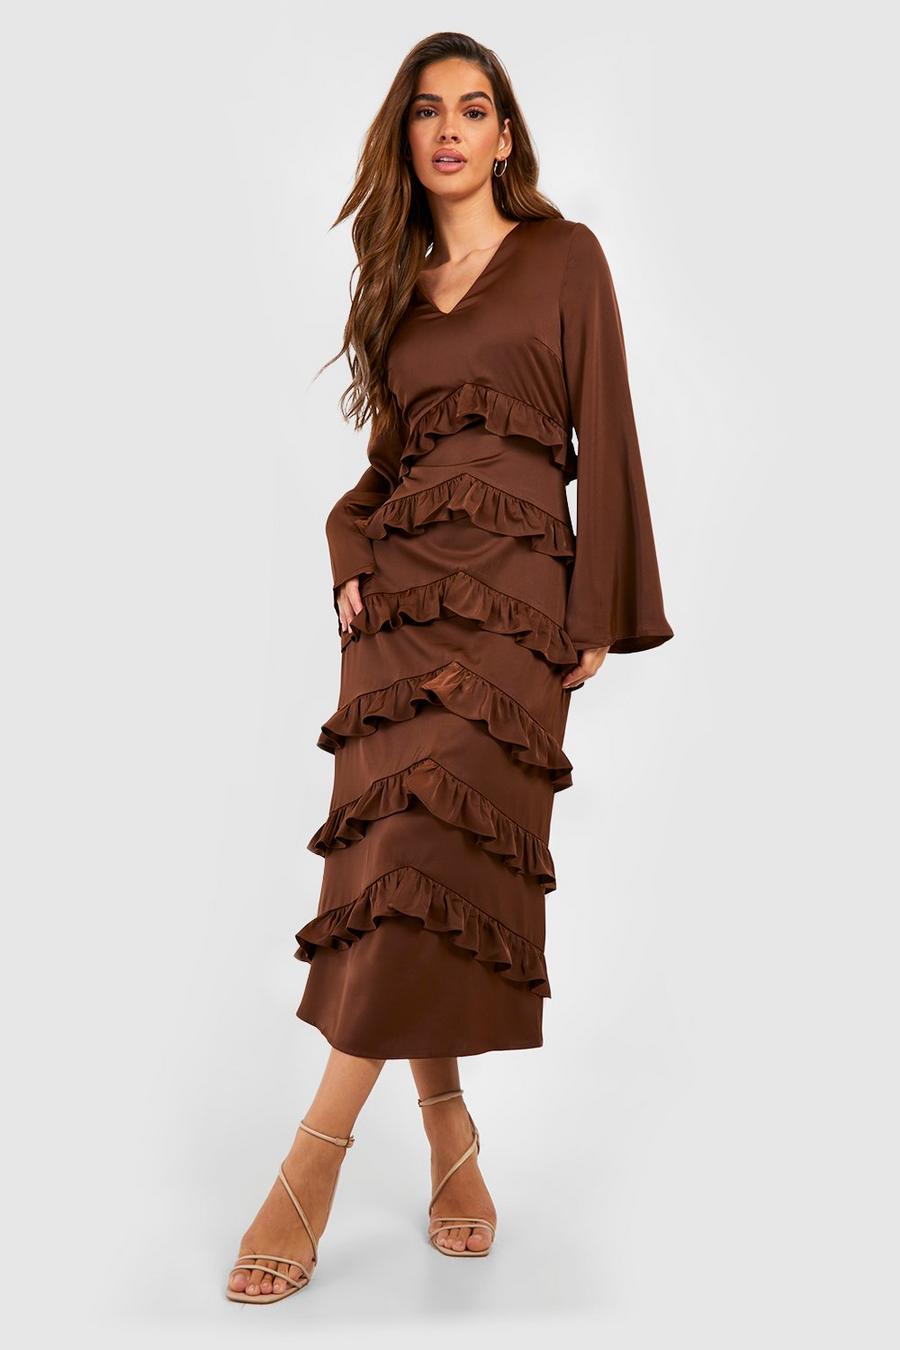 Chocolate Chiffon Ruffle Tiered Midaxi Dress